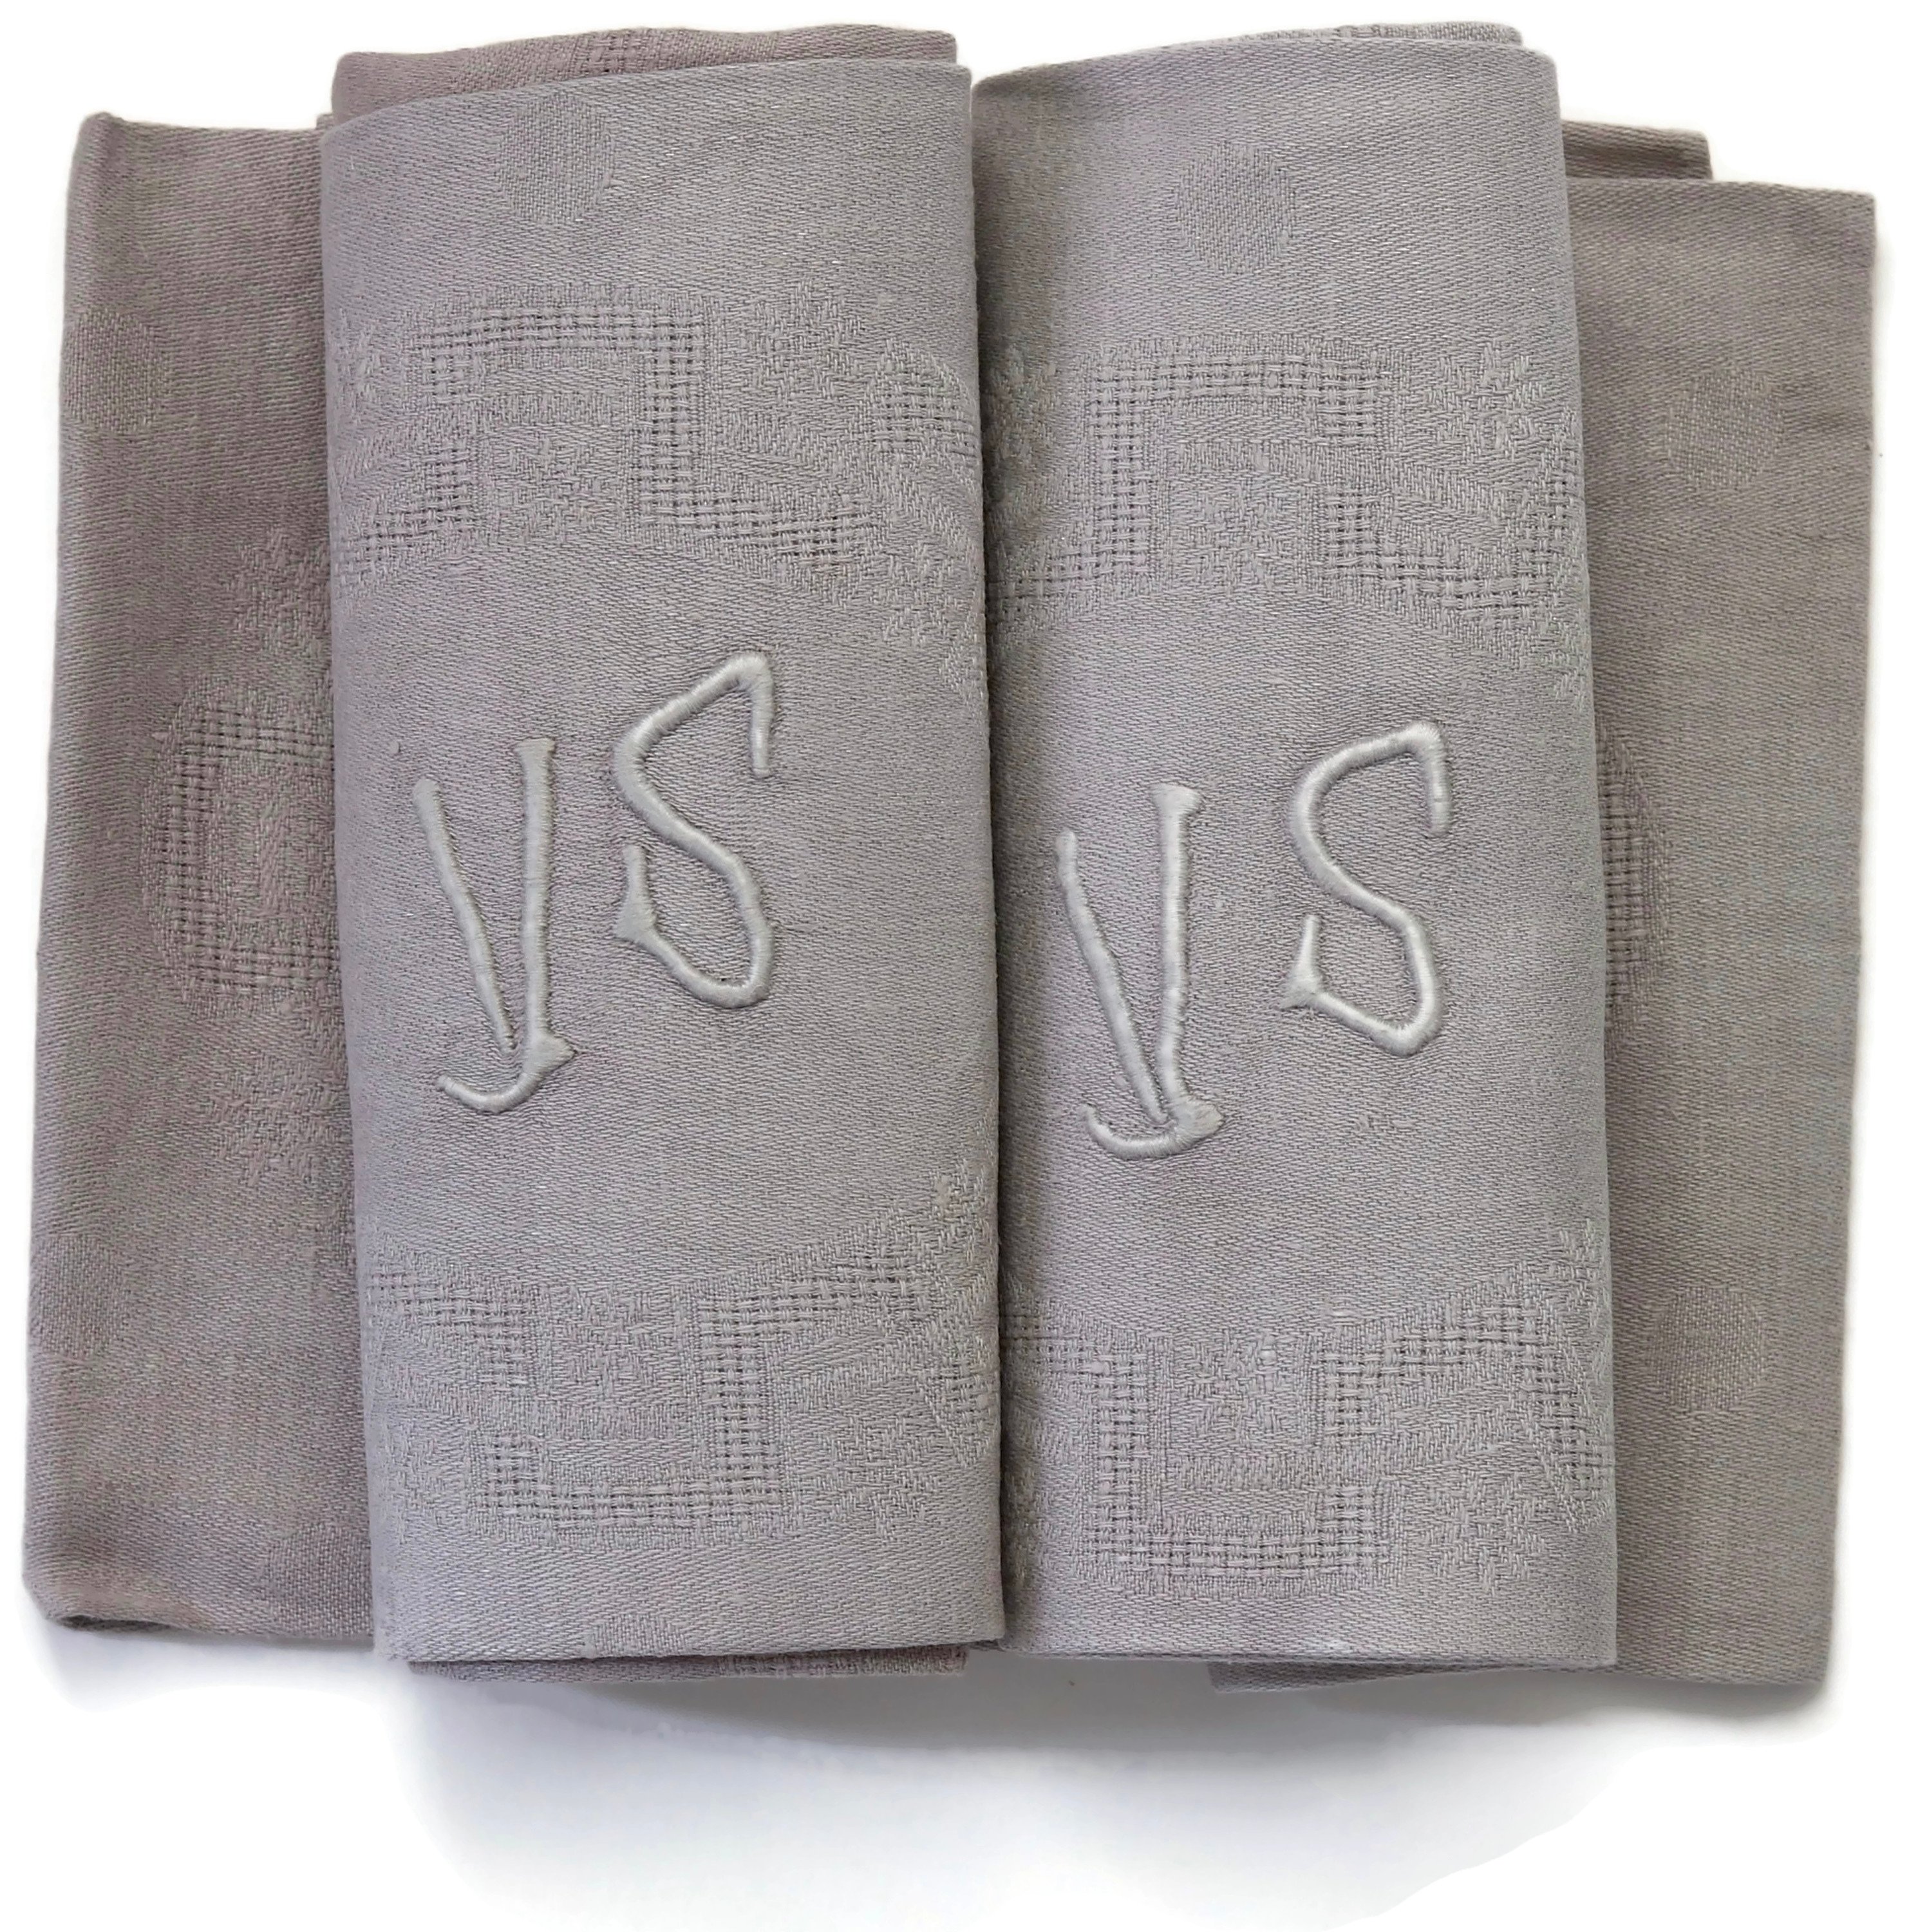 1920s French Linen "VS" Napkins, S/10~P77602566